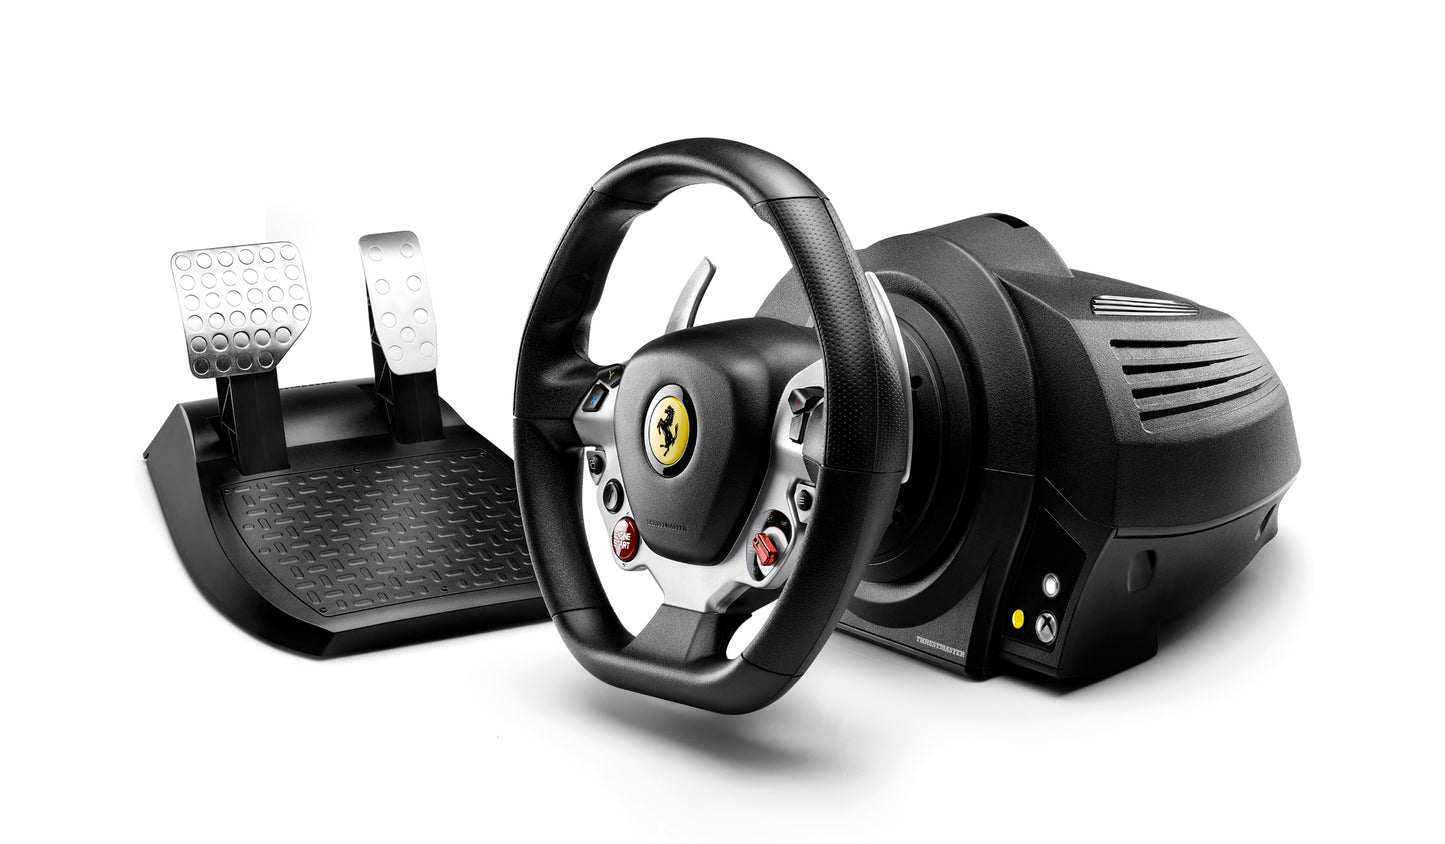 Thrustmaster TX Force Feedback Racing Wheel Ferrari 458 Italia Edition